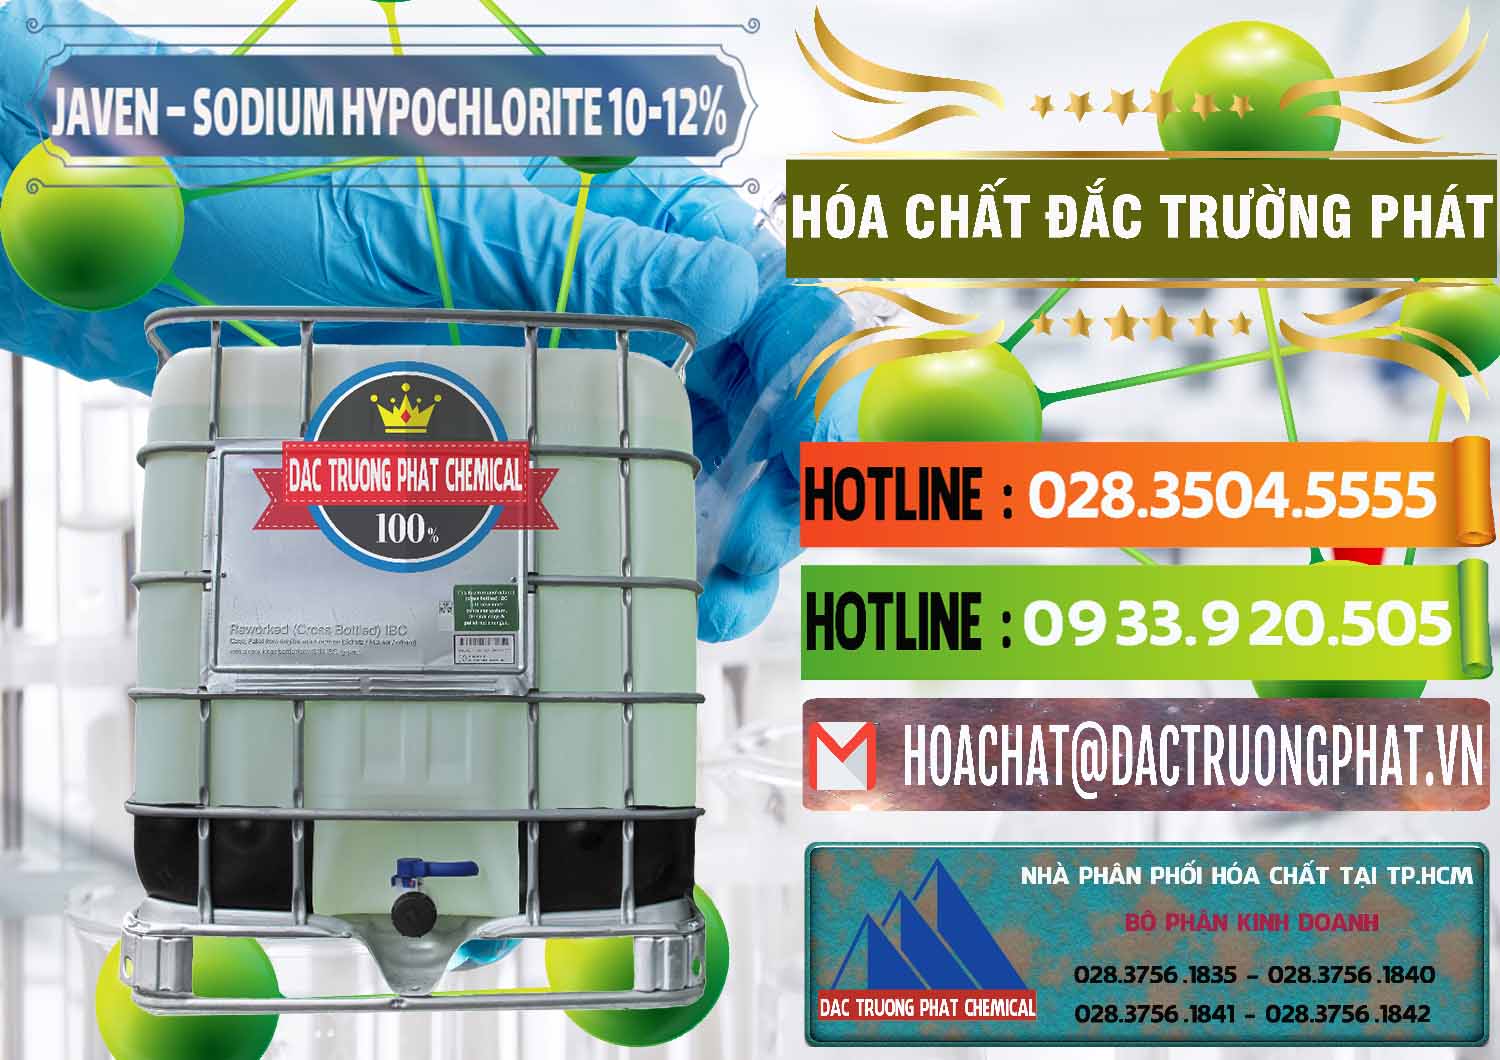 Phân phối & kinh doanh Javen - Sodium Hypochlorite 10-12% Việt Nam - 0188 - Đơn vị chuyên kinh doanh & cung cấp hóa chất tại TP.HCM - cungcaphoachat.com.vn